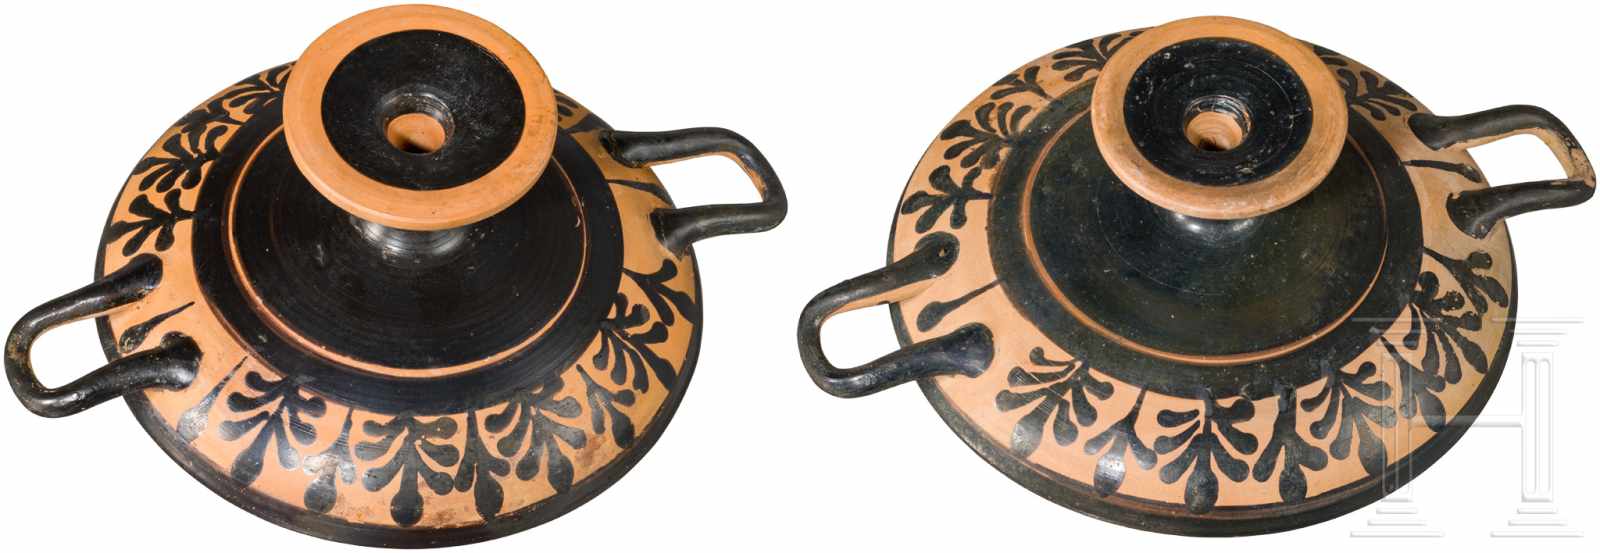 Zwei attische Trinkschalen, Griechenland, 4. Jhdt. v. Chr.Schwarz gefirnisste Trinkschalen. Innen je - Image 3 of 3